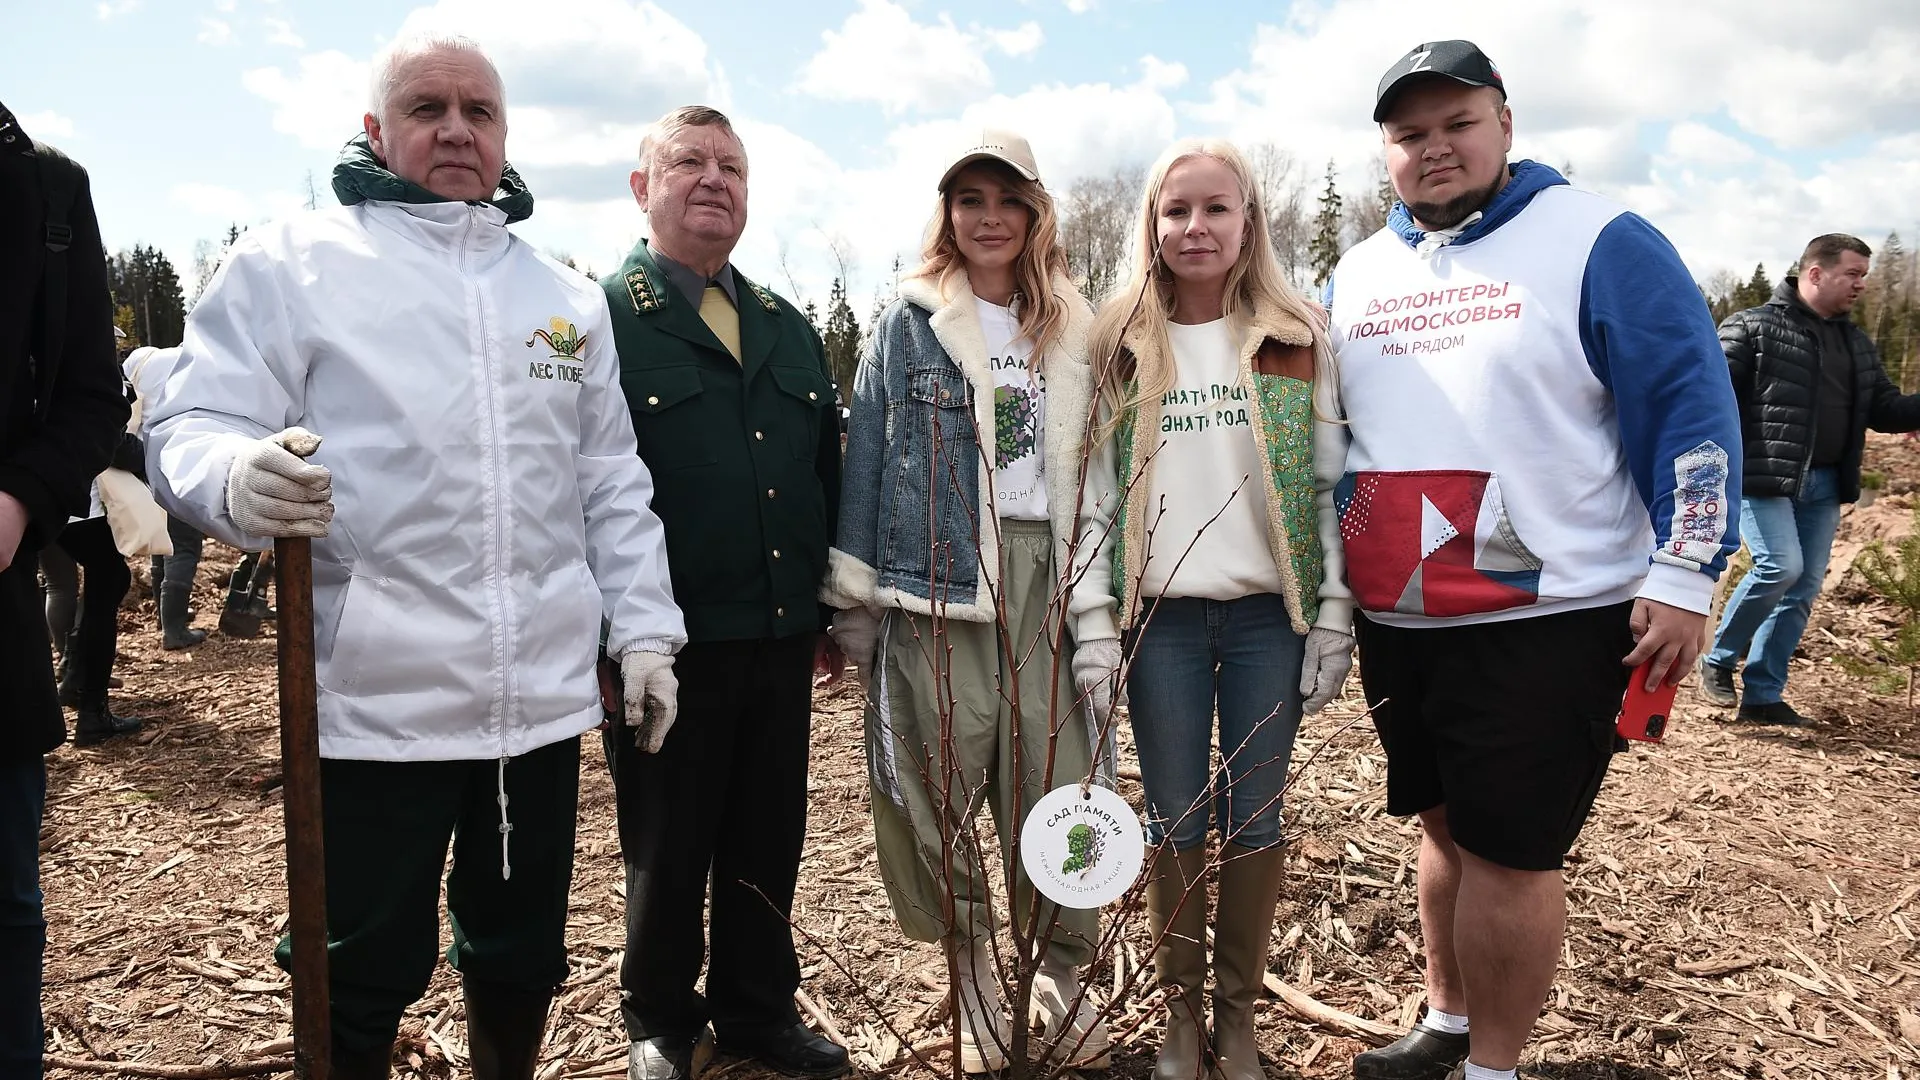 Актриса Анна Хилькевич приняла участие в памятной акции по высадке деревьев в Подмосковье